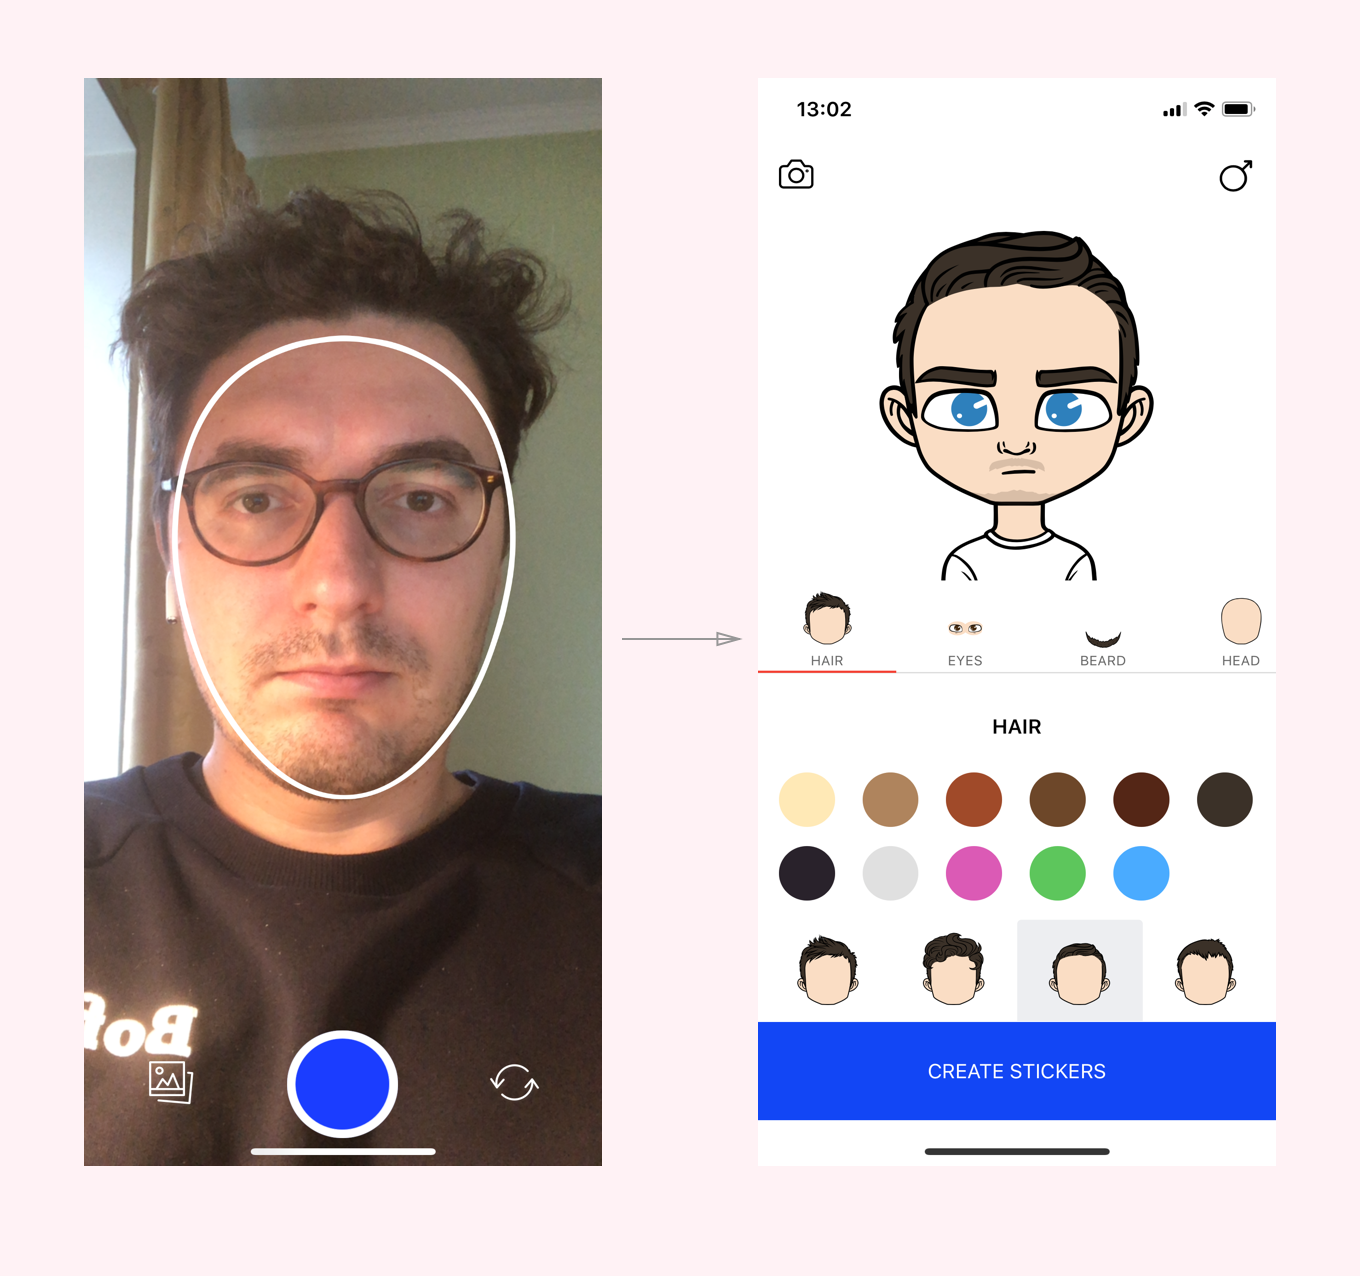 Как называется приложение где стикеры. Программа для создания аватарки. Создание стикеров со своим лицом. Приложение для делания стикеров. Приложение для создания своего аватара.